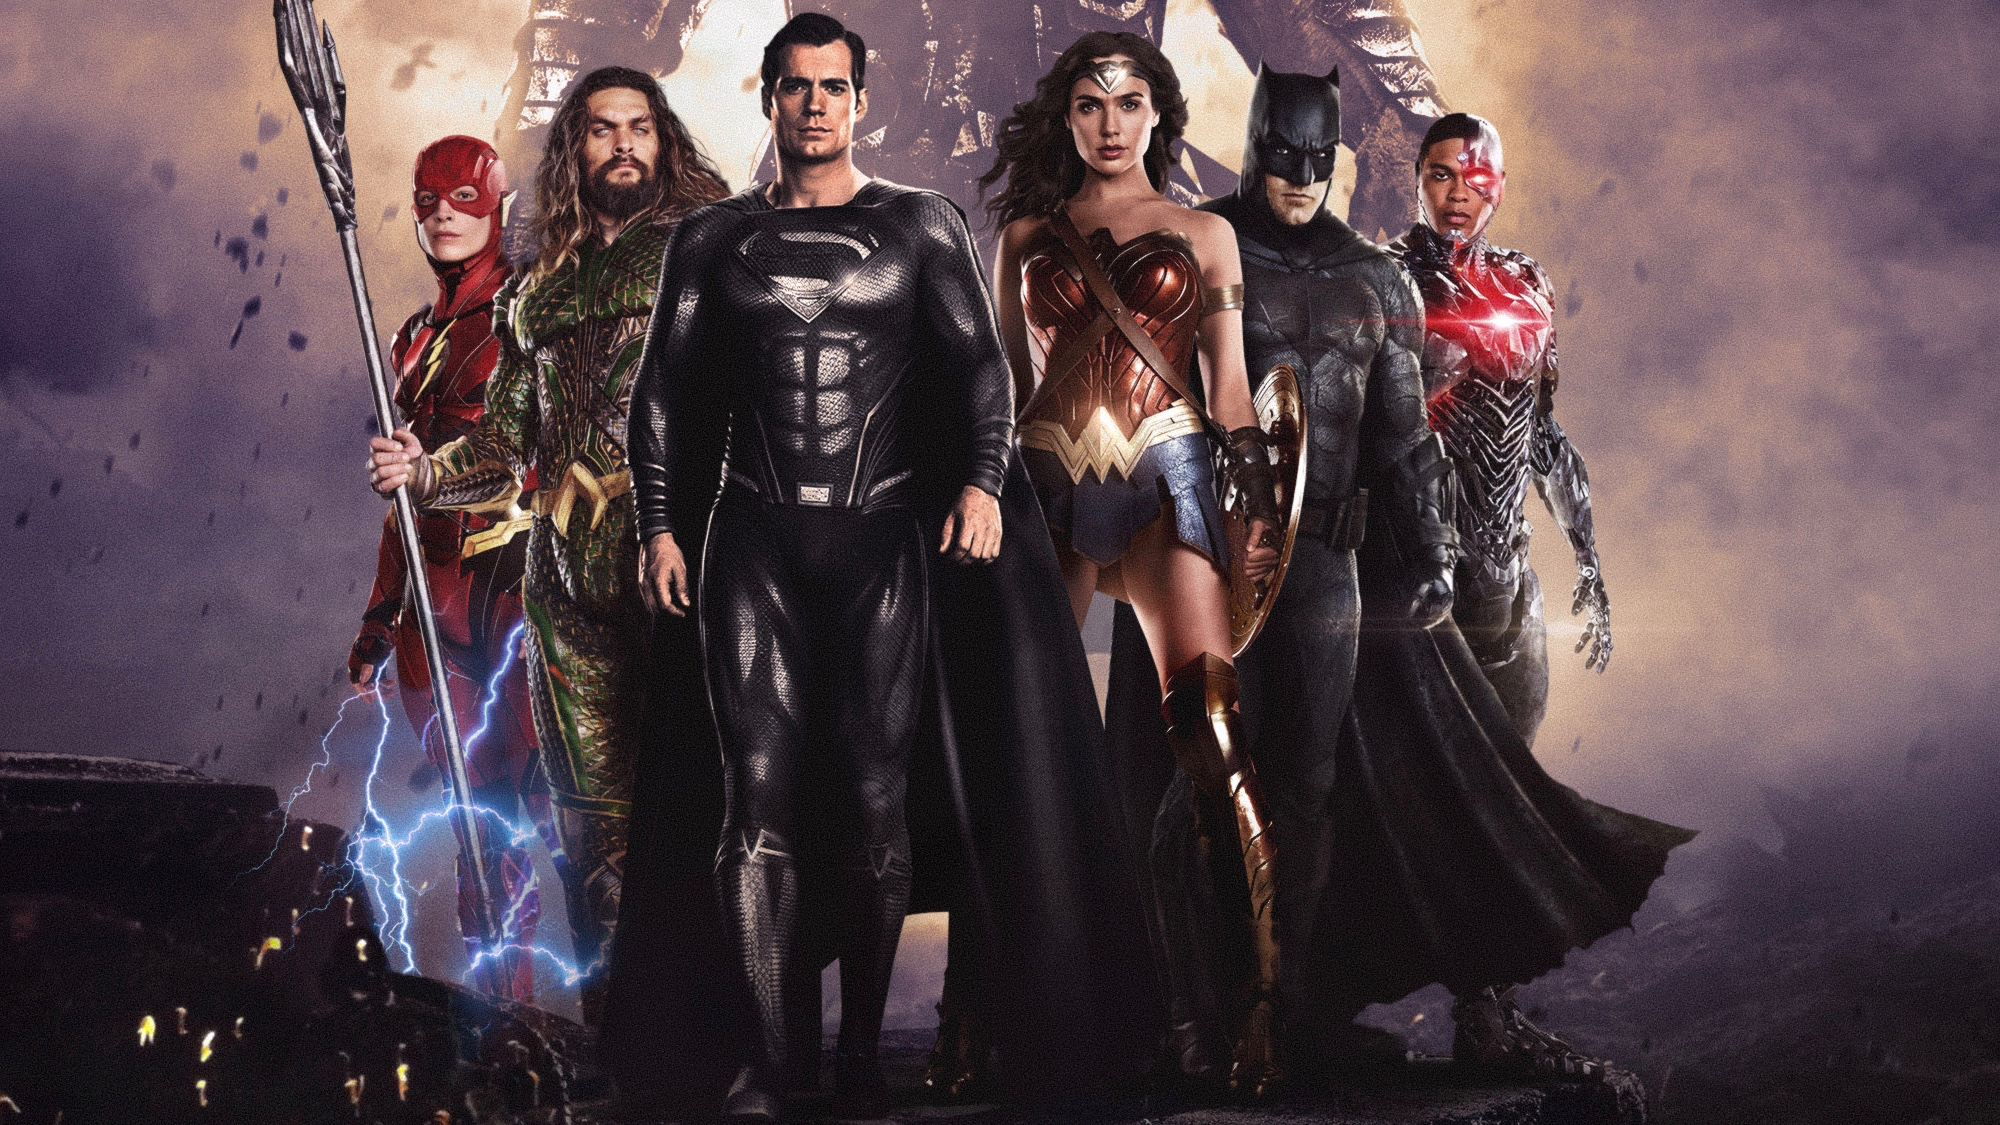 Download mobile wallpaper Batman, Superman, Flash, Movie, Aquaman, Wonder Woman, Cyborg (Dc Comics), Justice League, Barry Allen, Zack Snyder's Justice League for free.